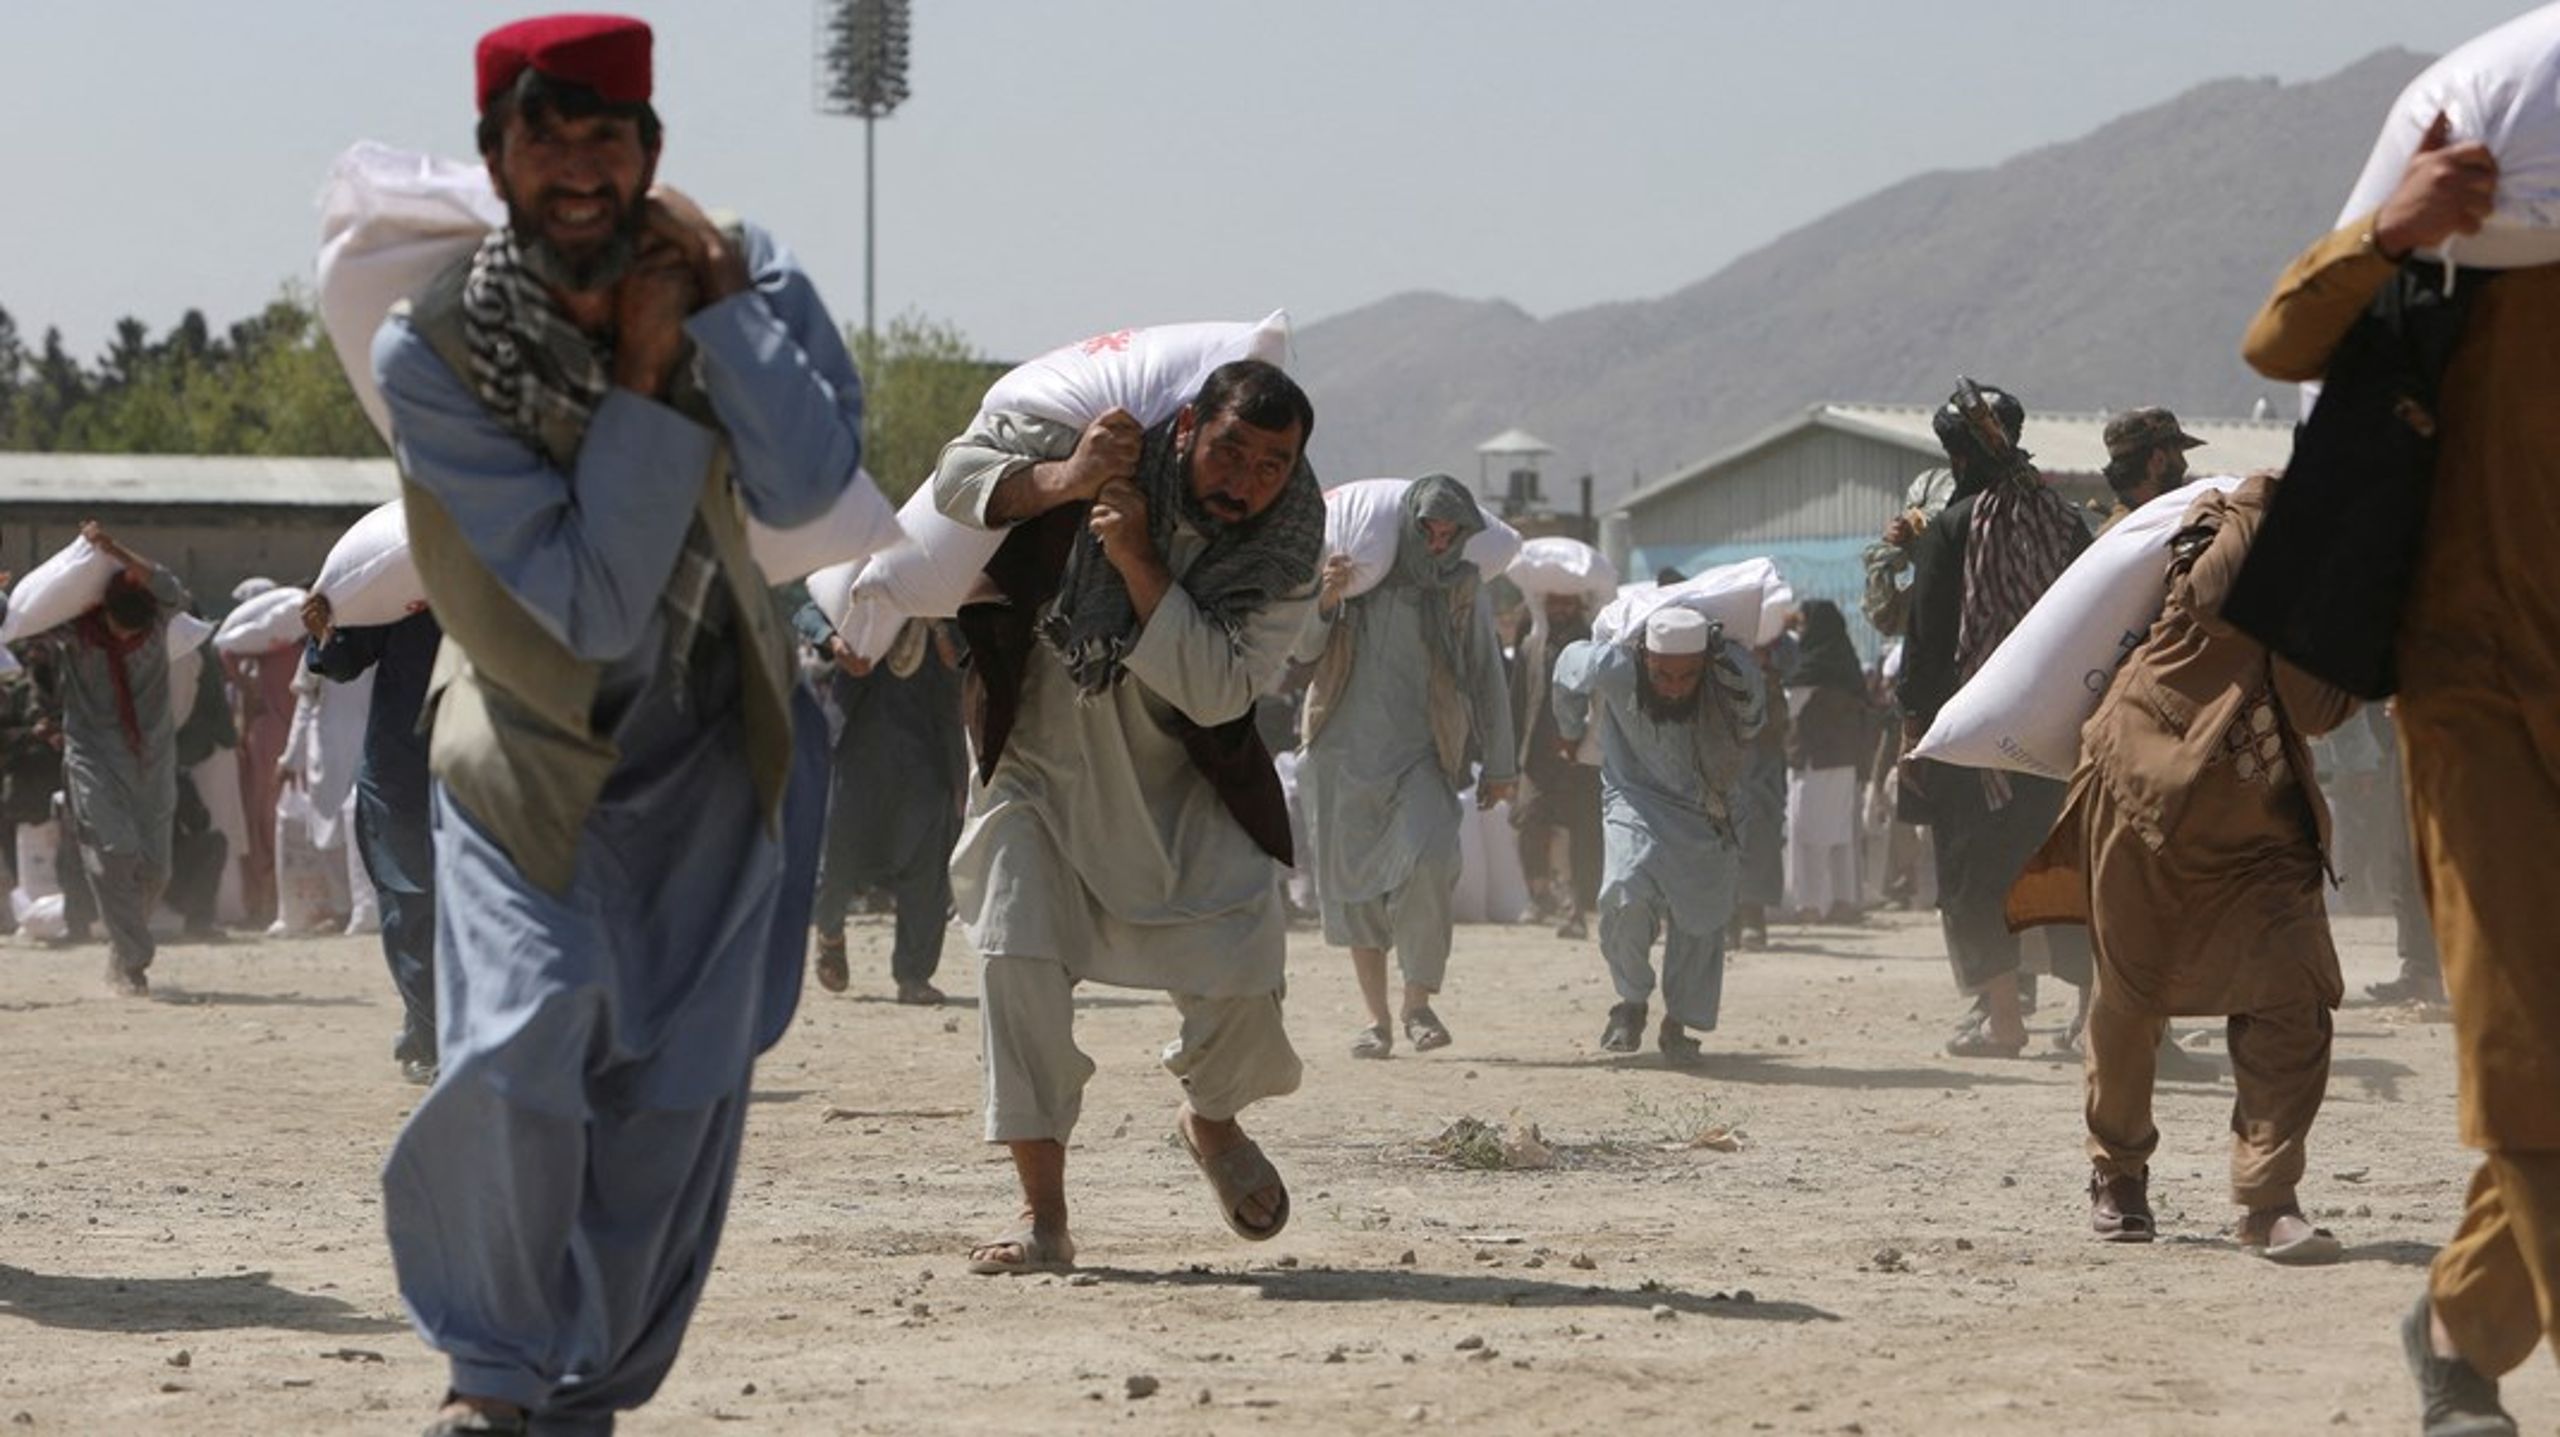 Det er to år siden Taliban overtog magten i Afghanistan, og selvom landet er blevet mere fredeligt, er både kvindernes rettigheder og landets økonomi i den grad under pres, fortæller Klaus Løkkegaard, der er sekretariatschef i Dacaar.&nbsp;